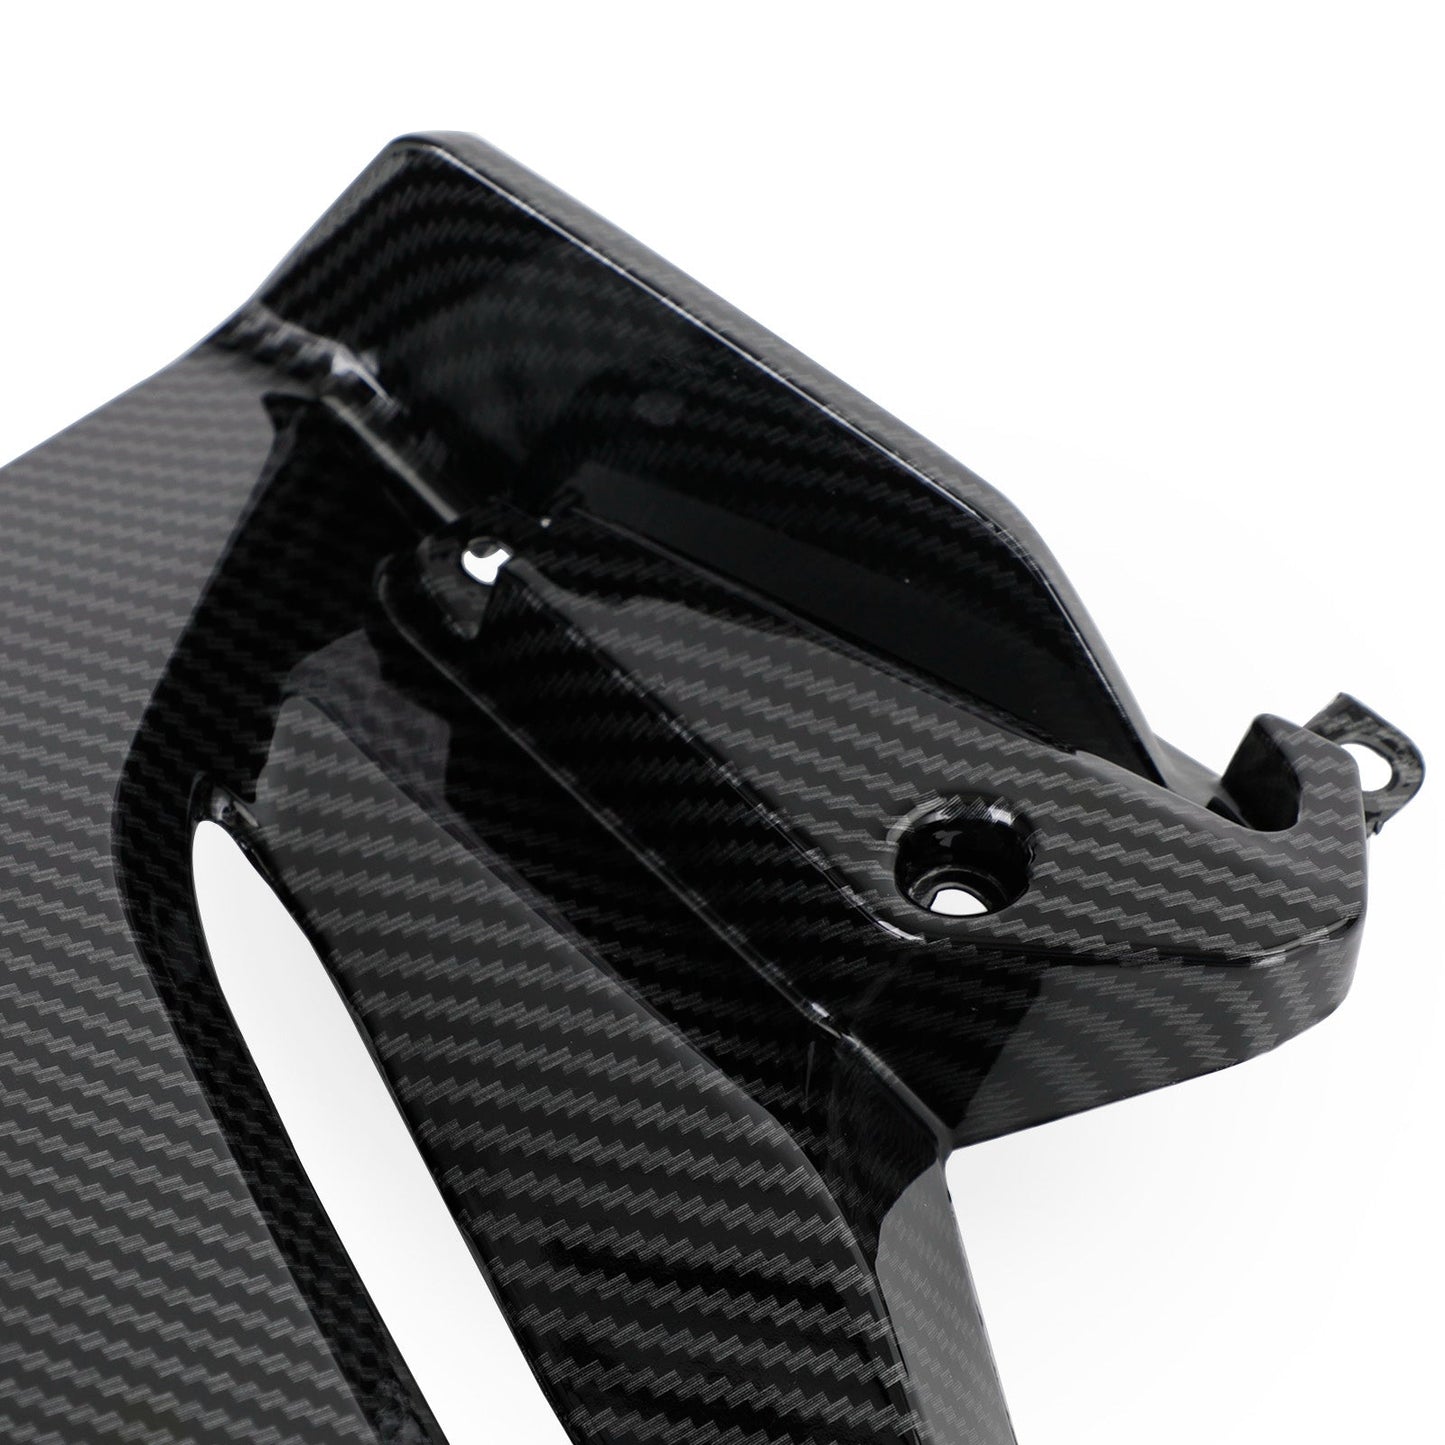 Side frame Cover Panel Fairing Cowl for Honda CBR500R 2019-2021 Black